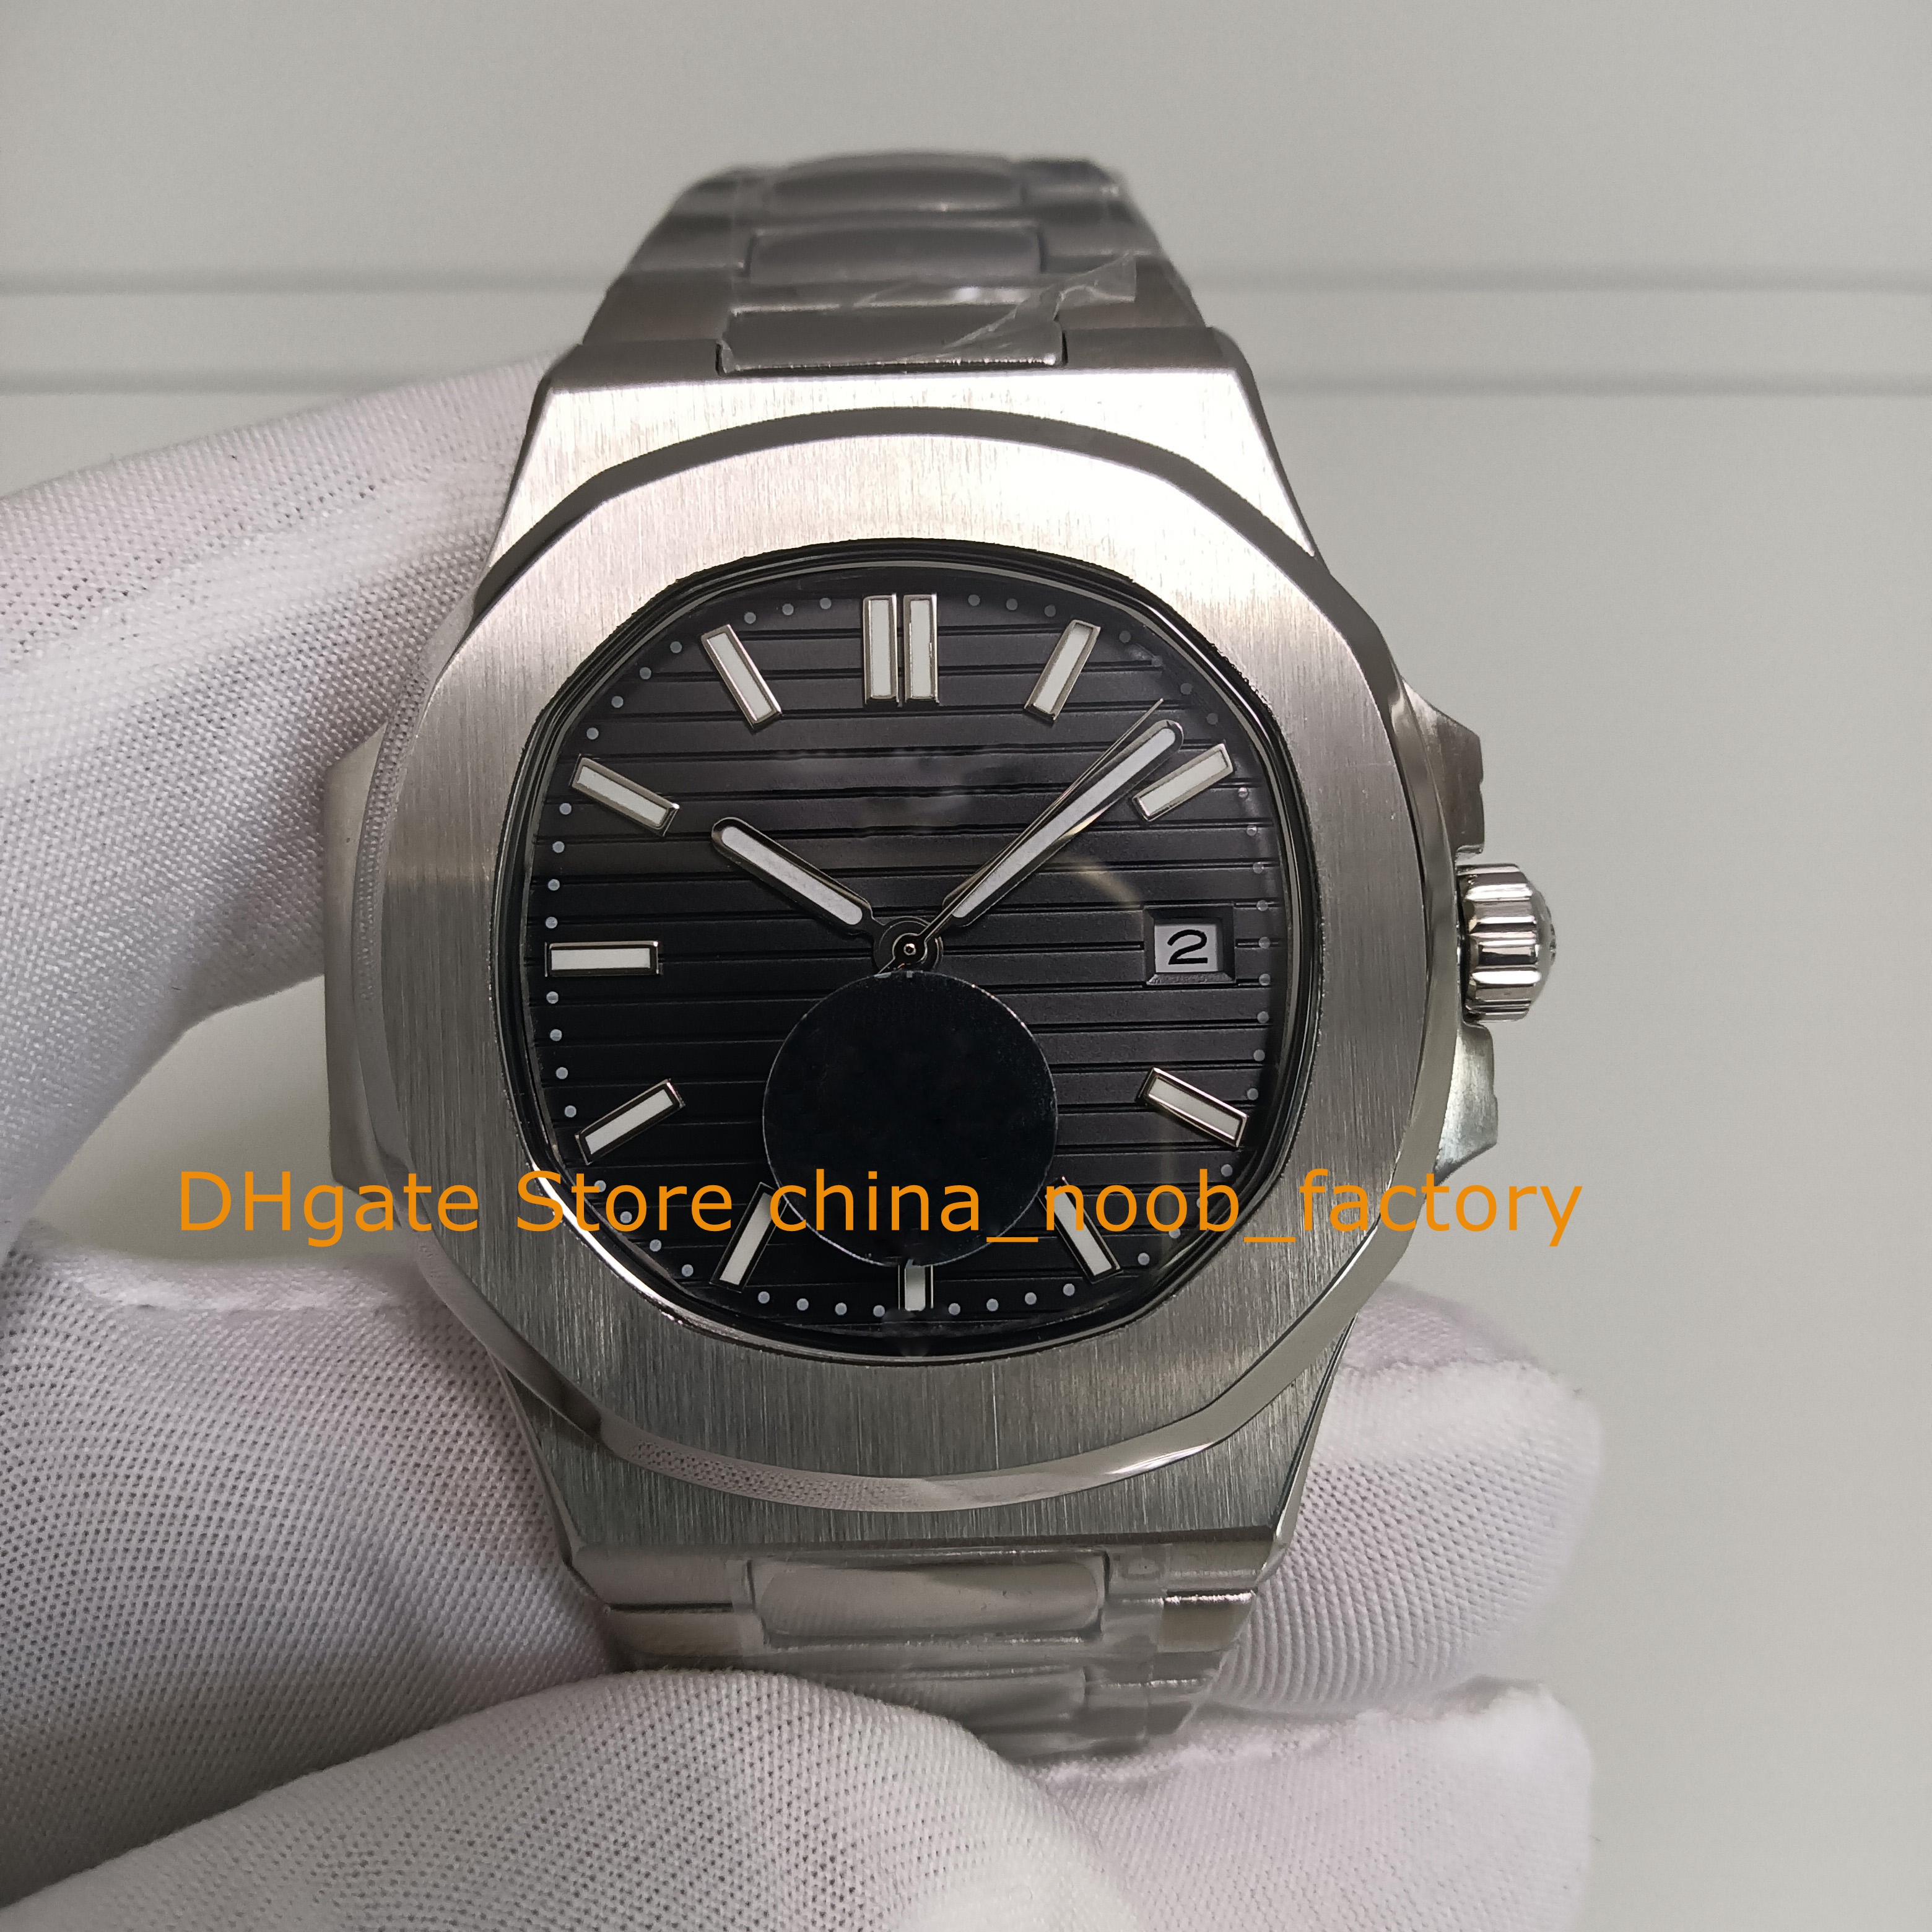 5 kolorowy automatyczny zegarek dla mężczyzn 40 mm 5711 Data Czarna biała niebieska zielona zielona bransoletka ze stali nierdzewnej przezroczystą tylną Azję Cal.324 S C Mechaniczne zegarki